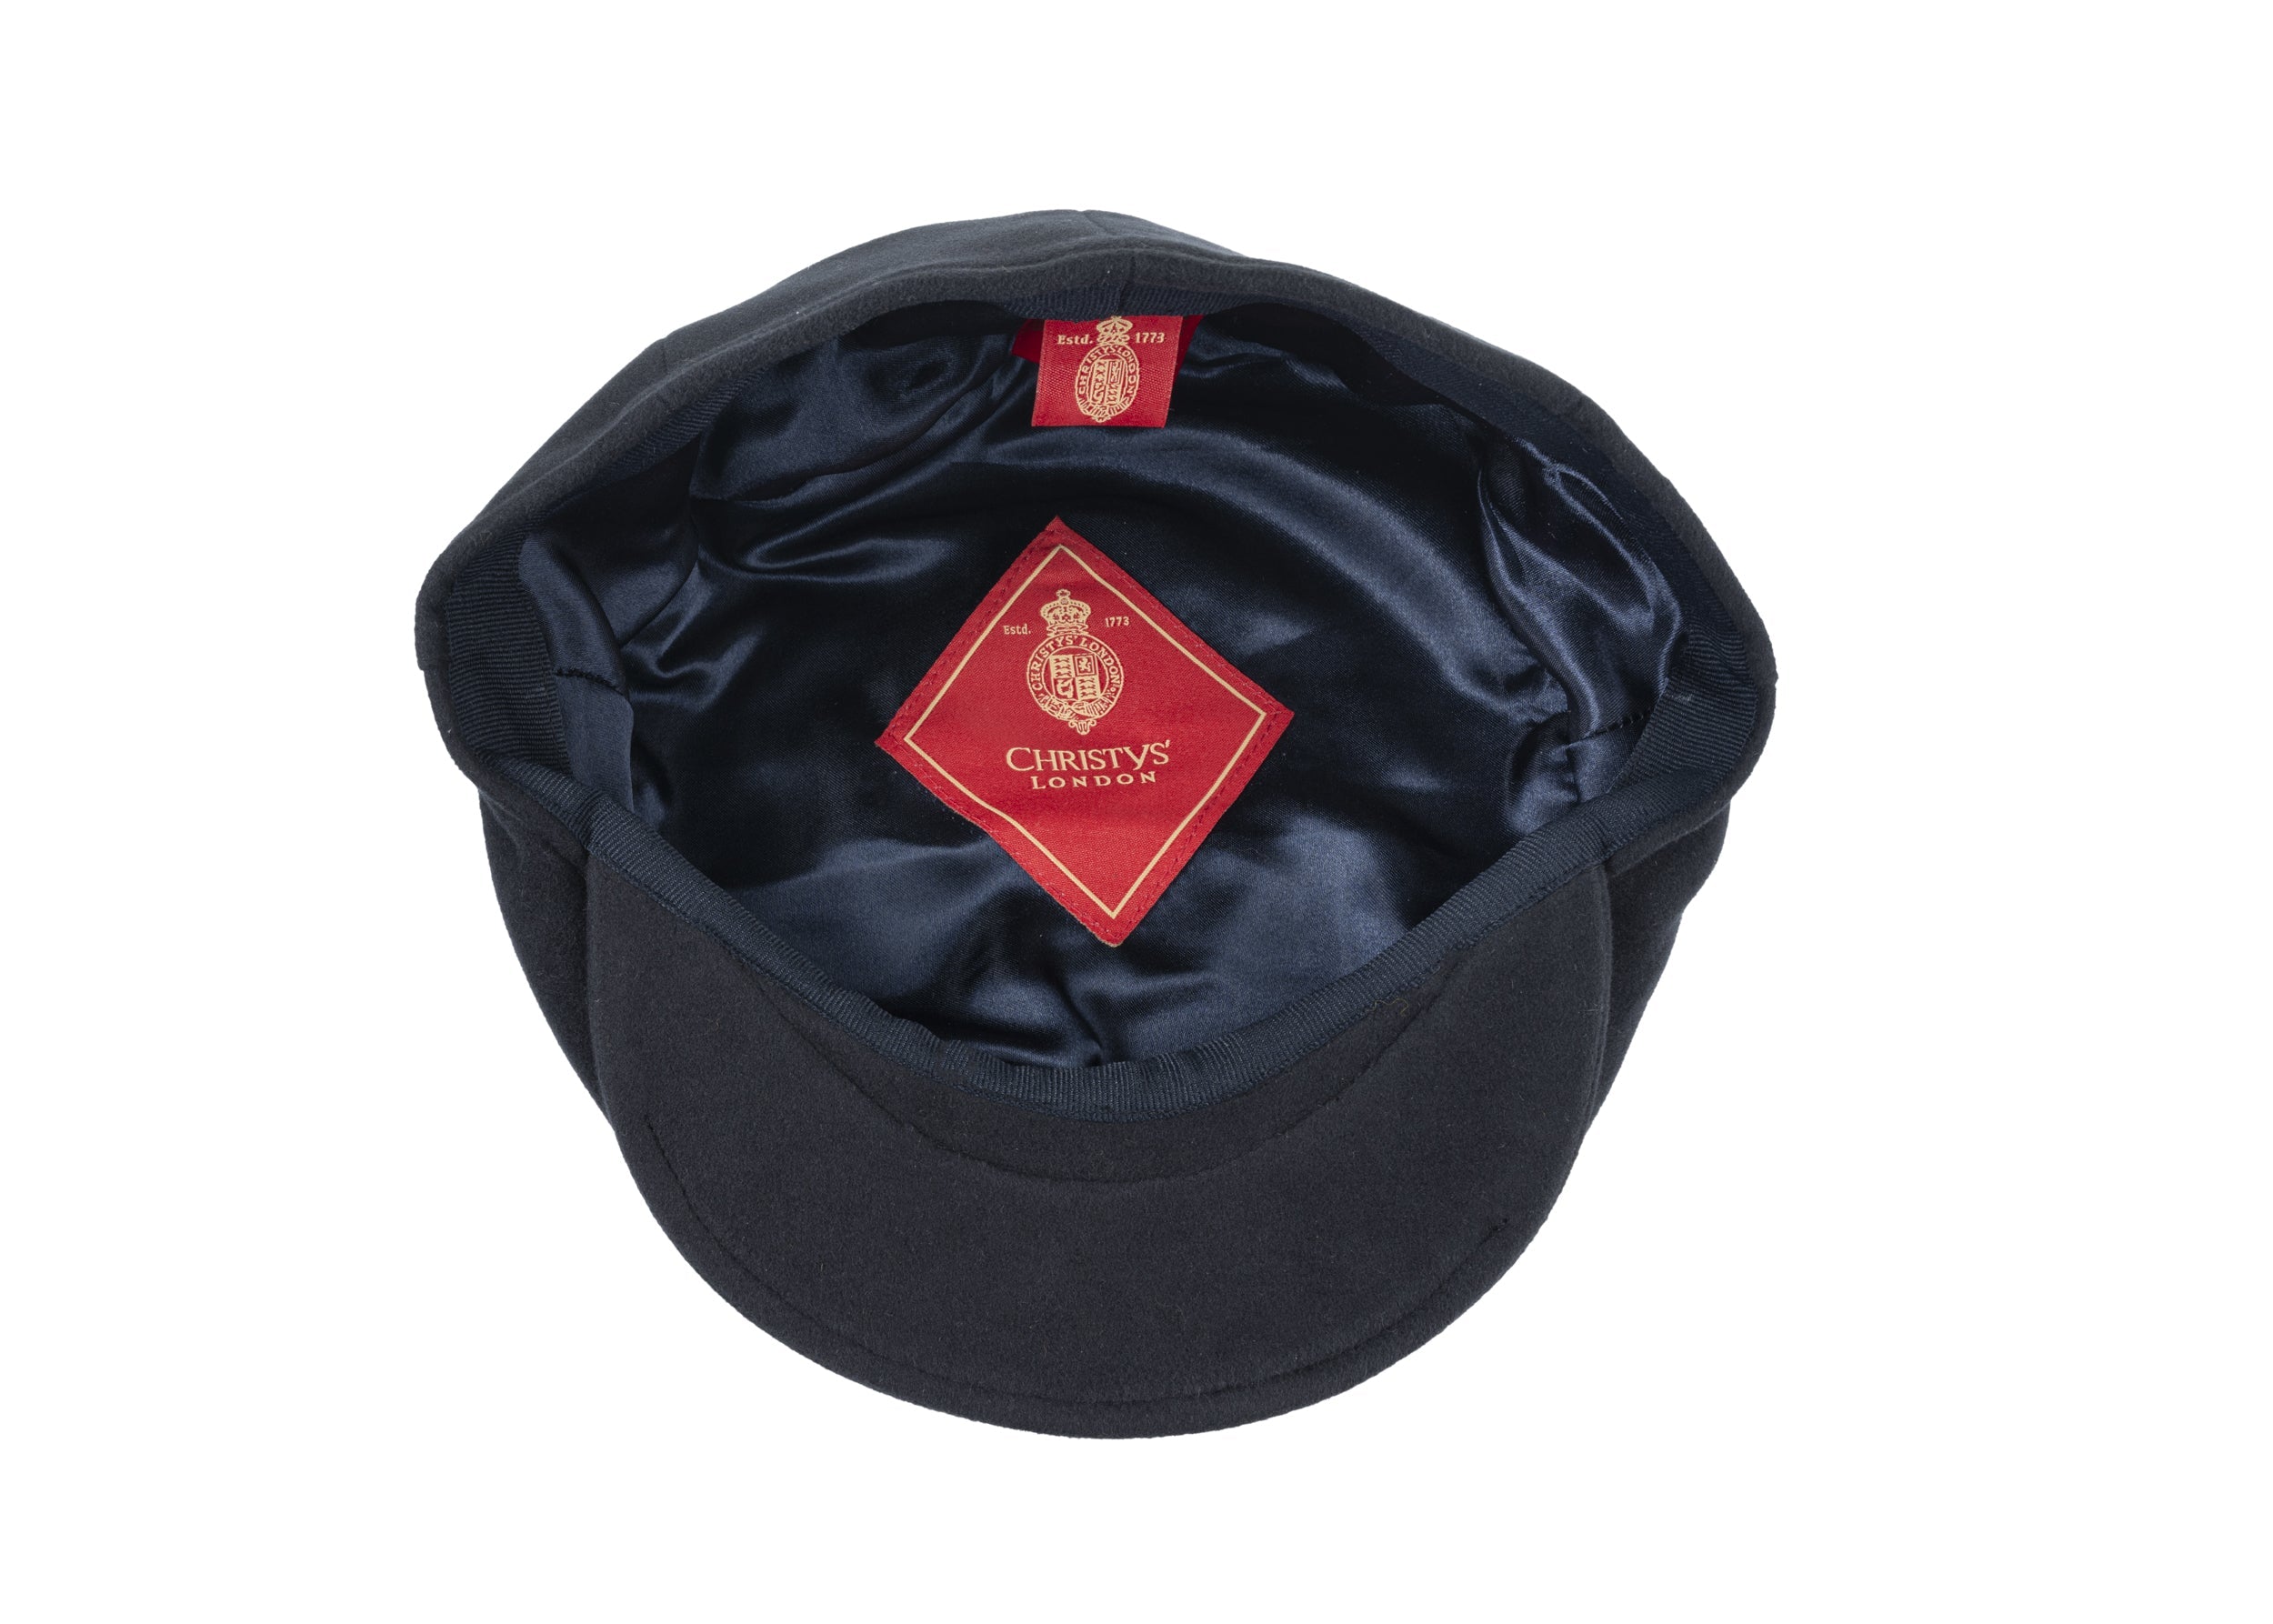 Balmoral moleskin cotton cap in Navy